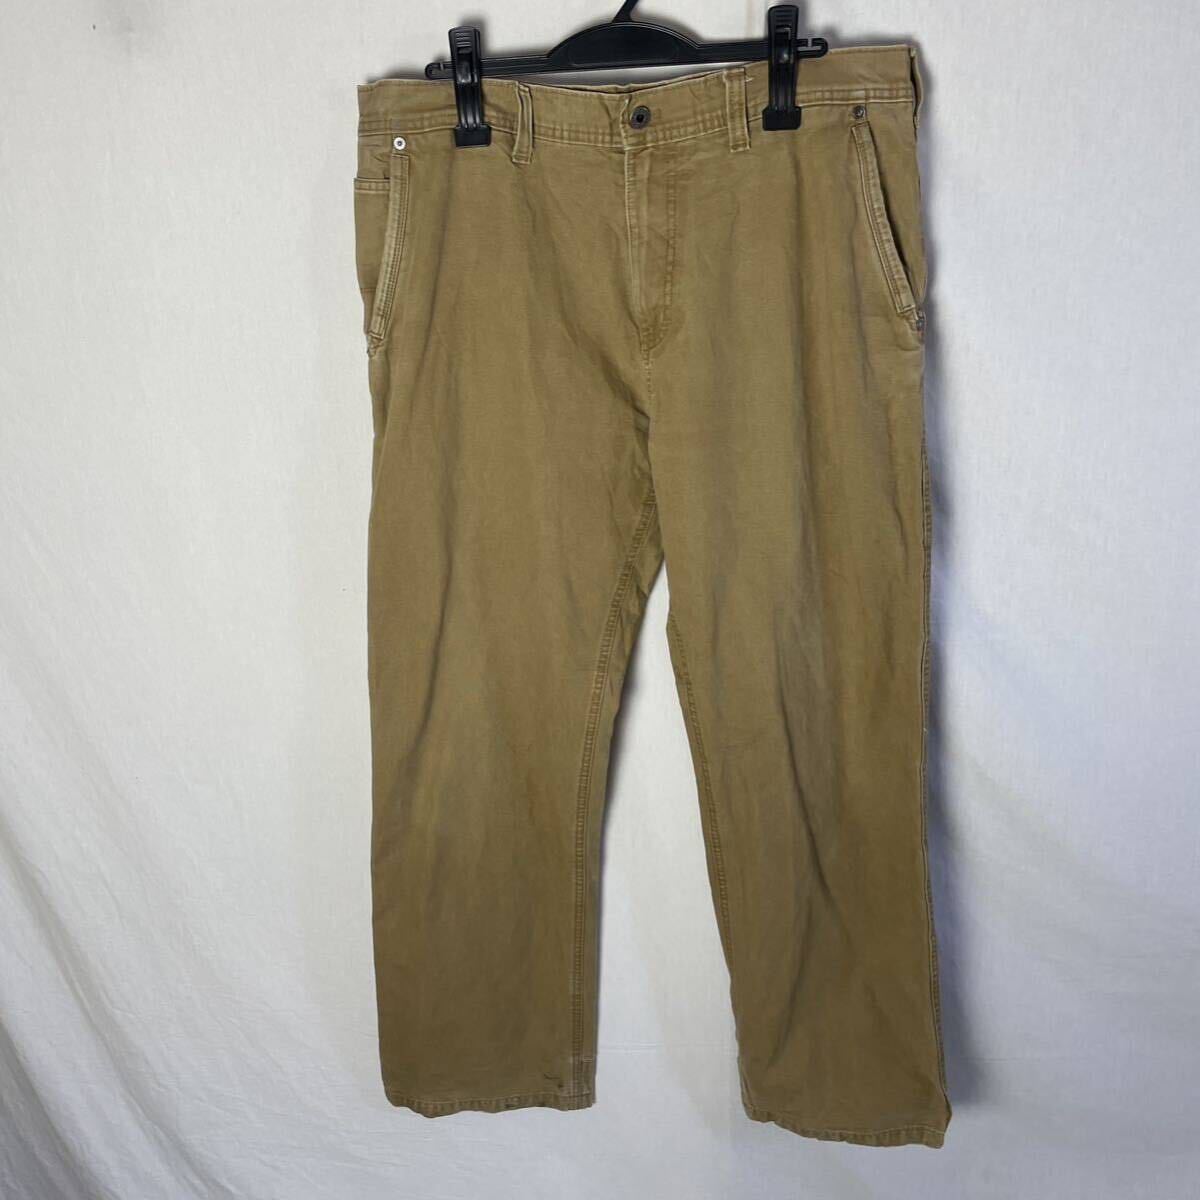  Eddie Bauer Duck work pants old clothes 36×32 light brown WORKWEAR